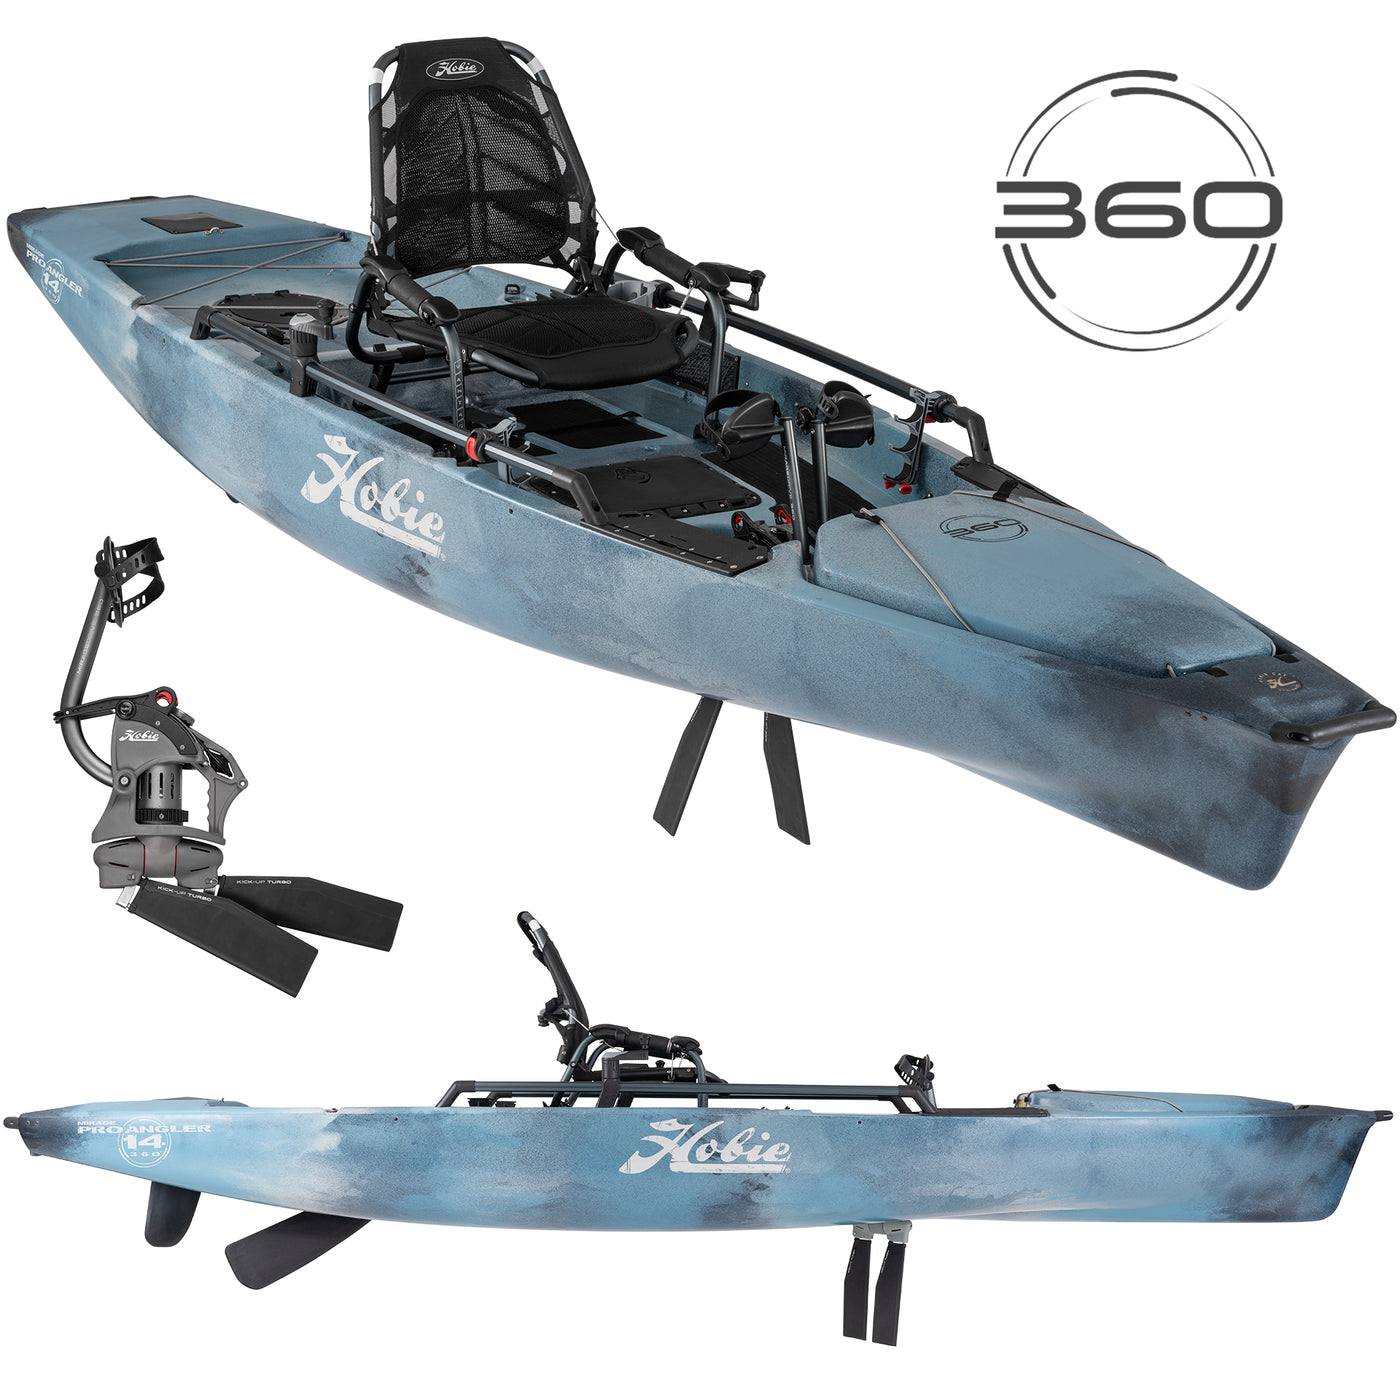 Hobie Mirage 360 Pro Angler 14 Fishing Kayak – Fishing Online